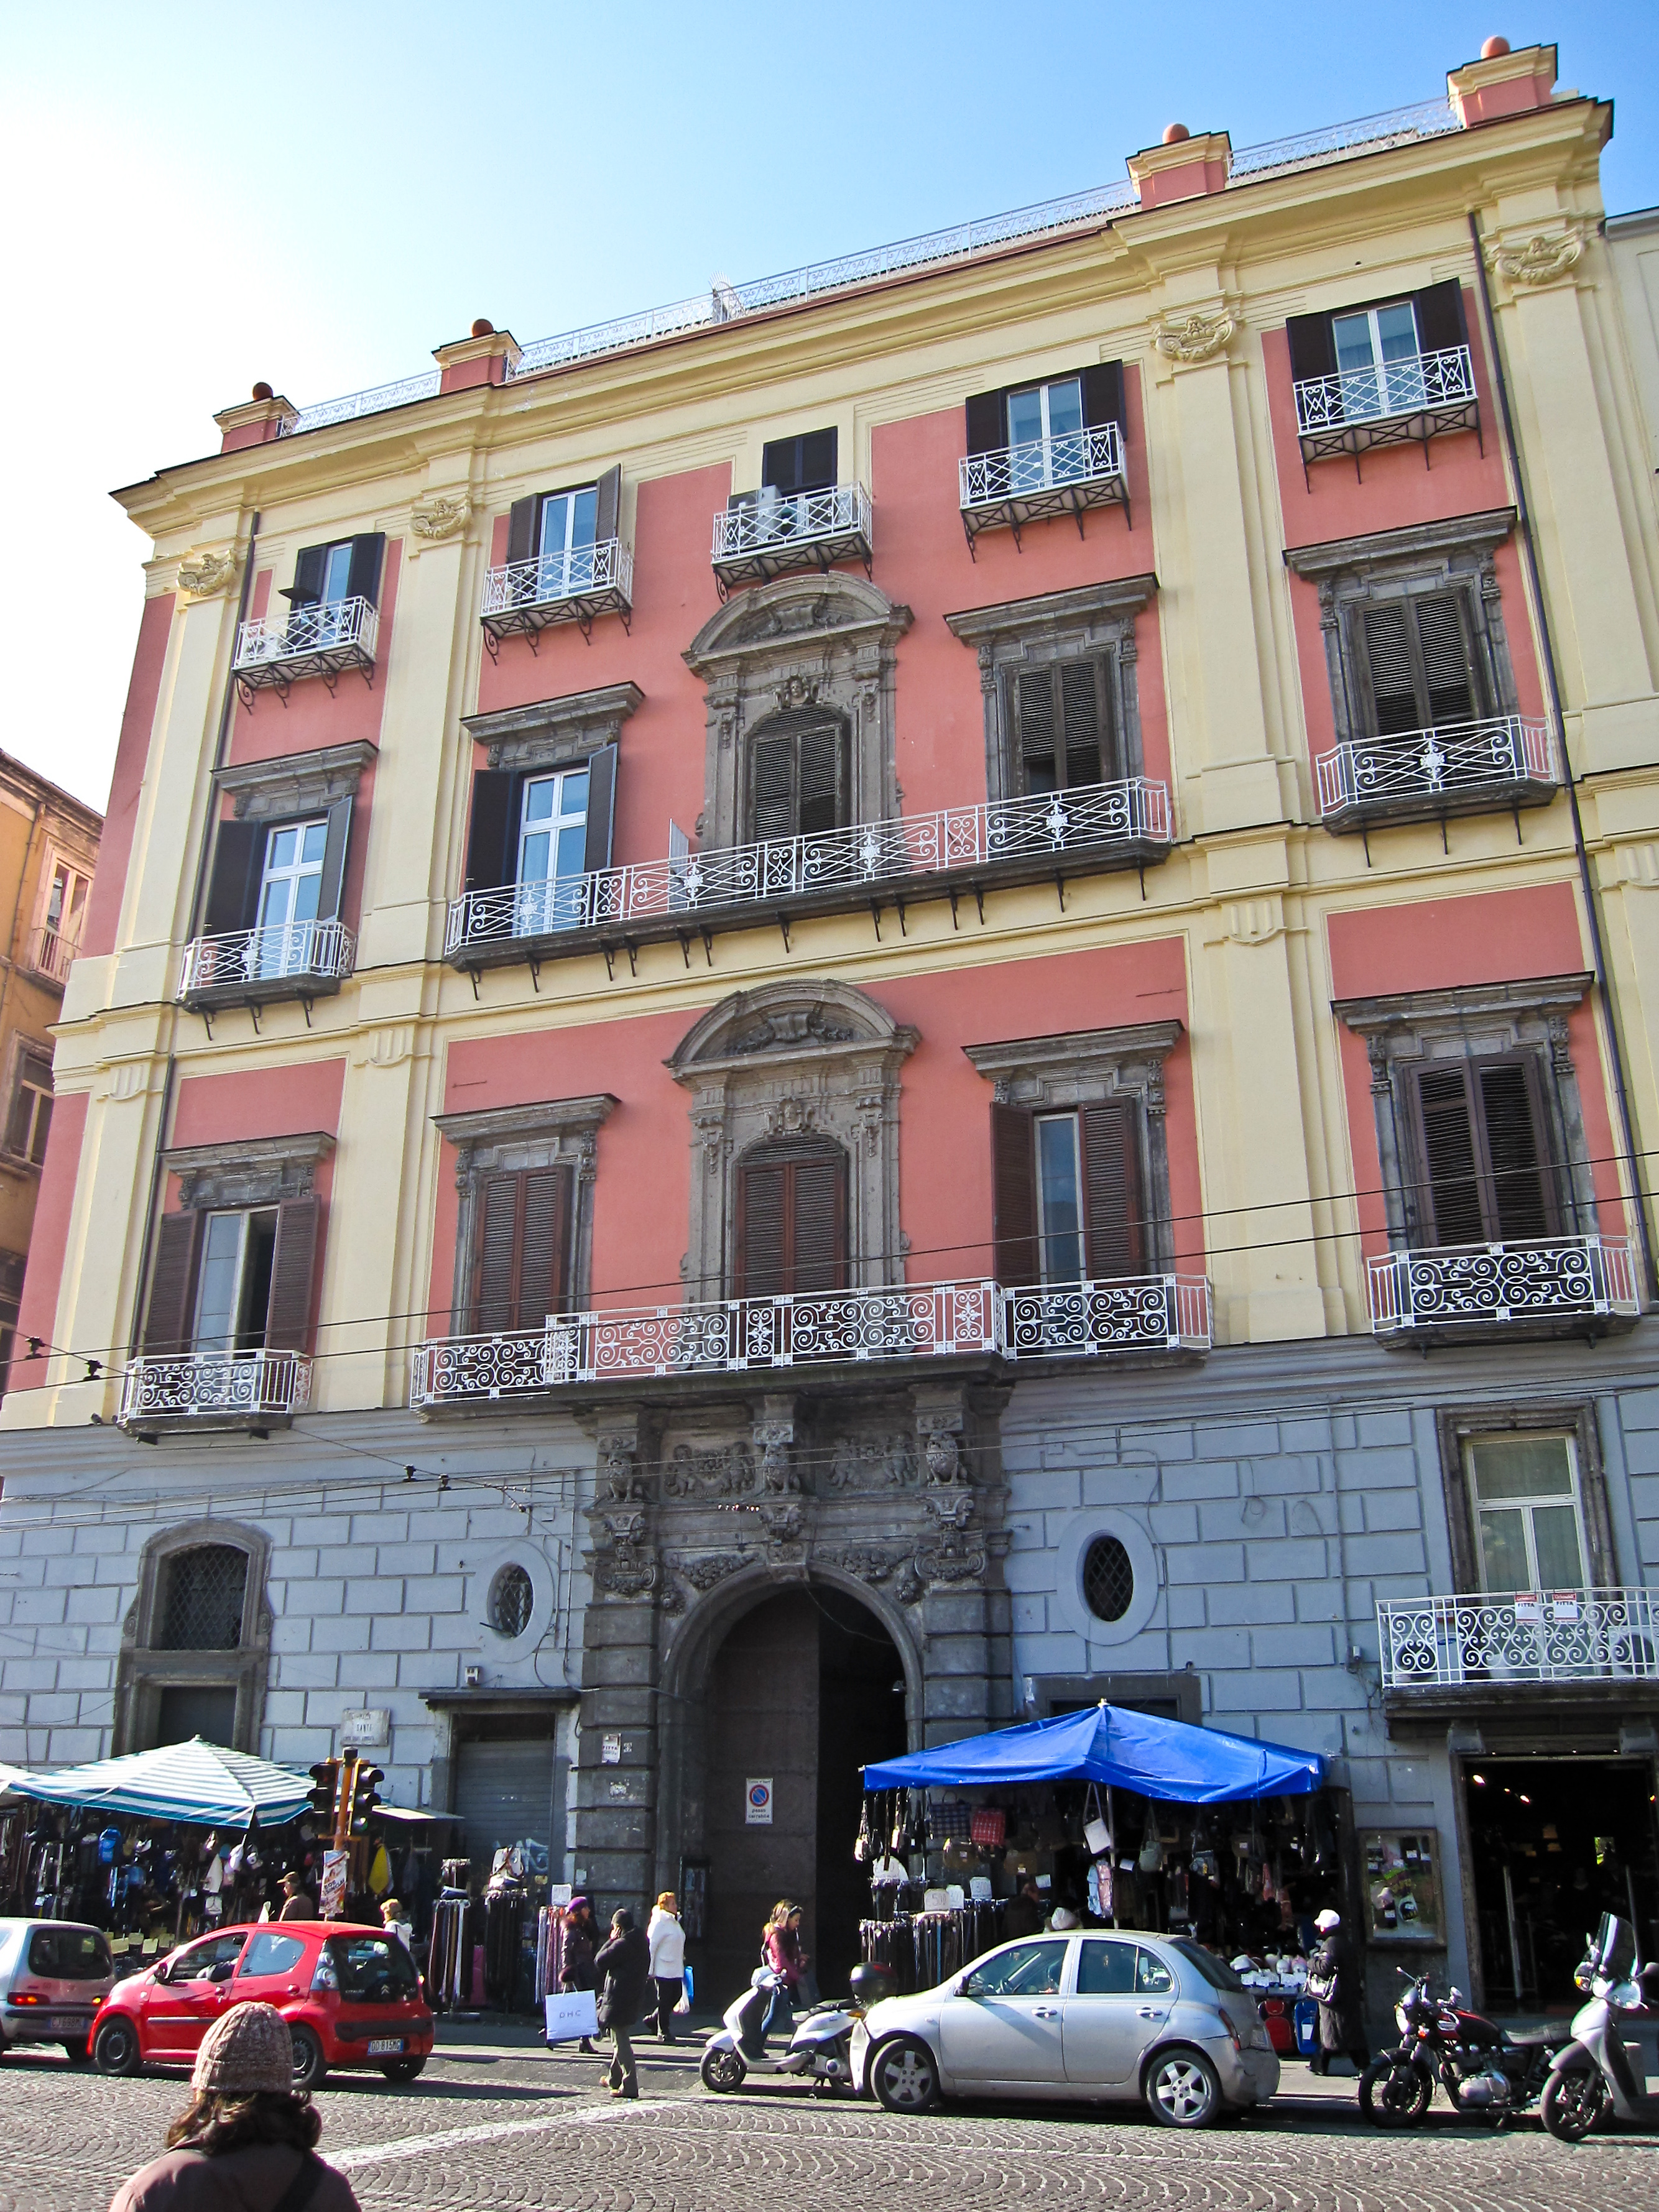 Armando Mancini, Napoli - Palazzo Ruffo di Bagnara. La facciata su Piazza Dante, 2010, fotografia digitale